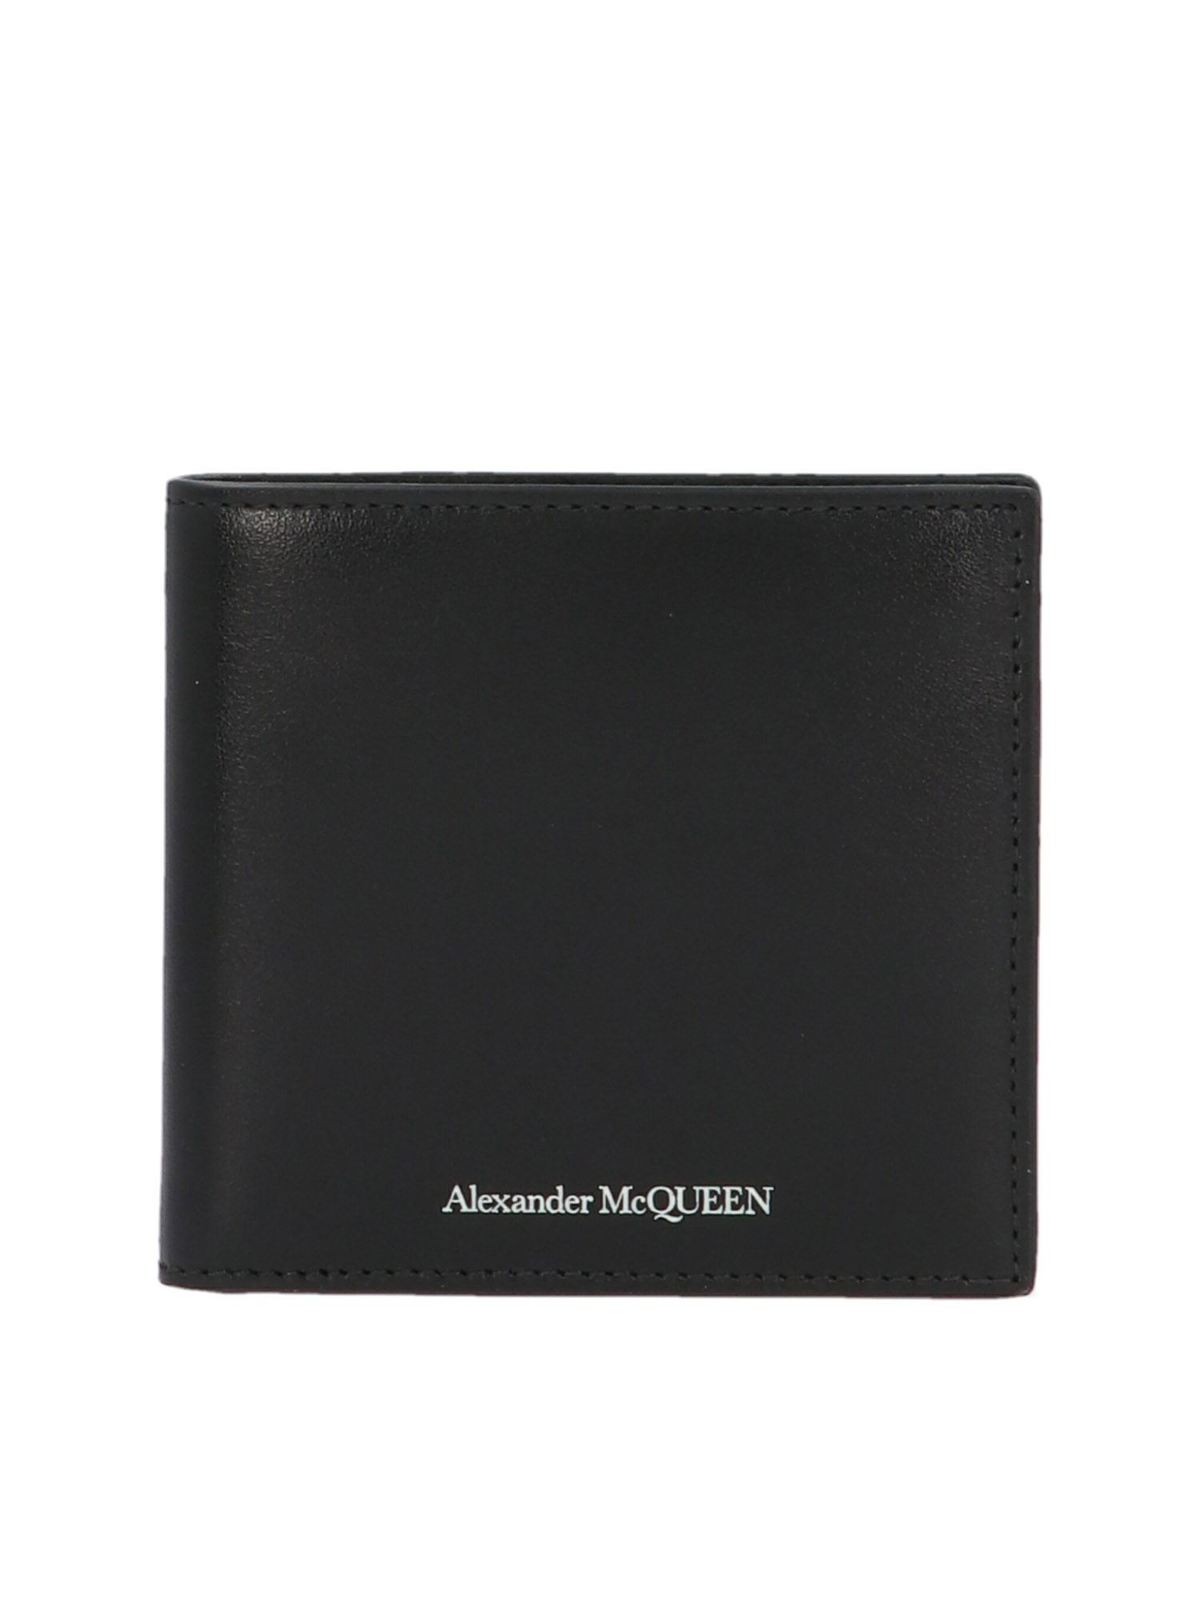 Logo wallet in black